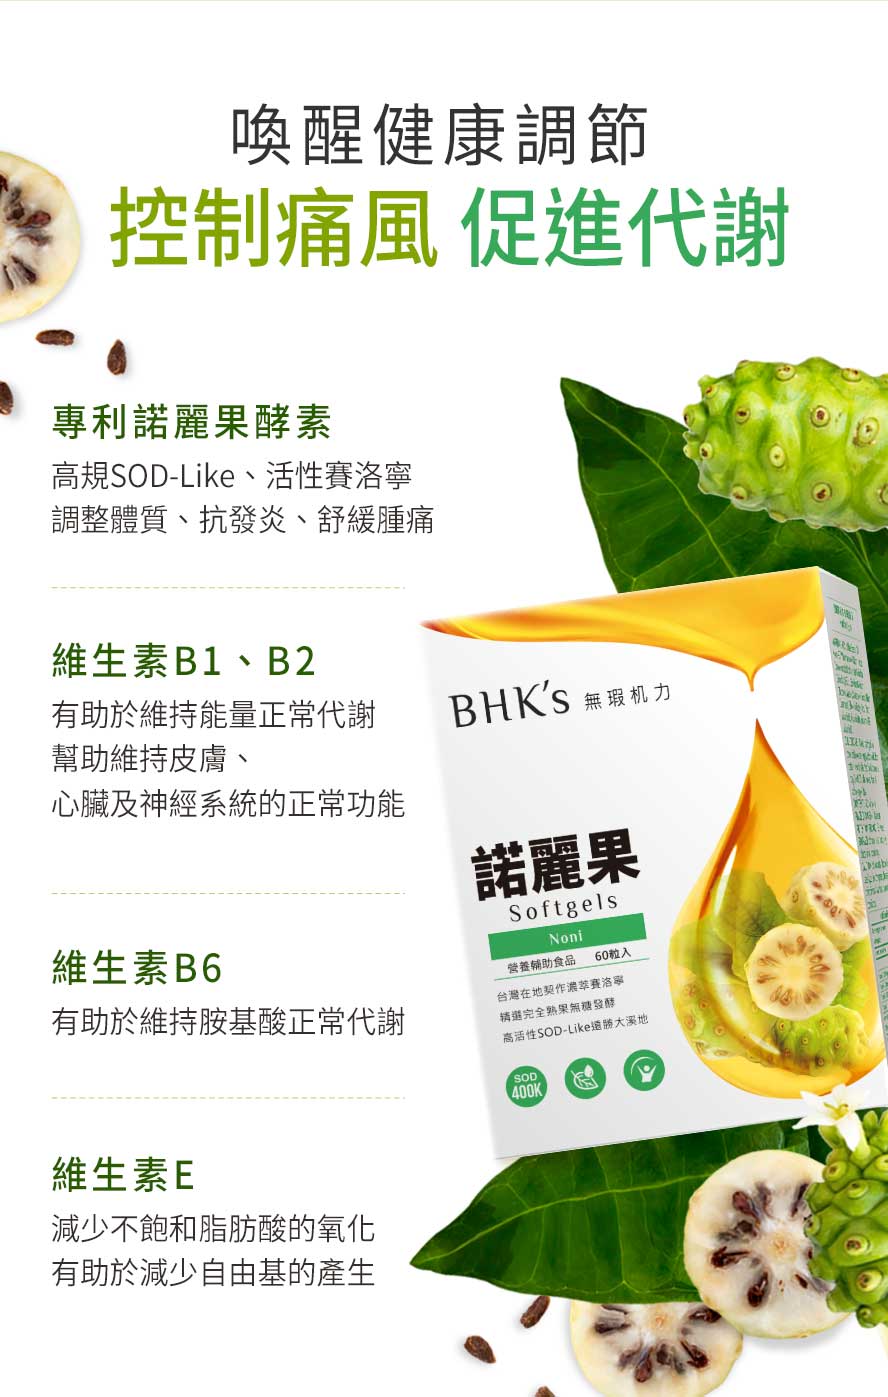 BHK's諾麗果含豐富SOD-Like與活性賽洛寧，能瓦解關節尿酸結晶、免疫力提升，添加維生素B1、B2、B6、E，維持胺基酸正常代謝、維持健康。